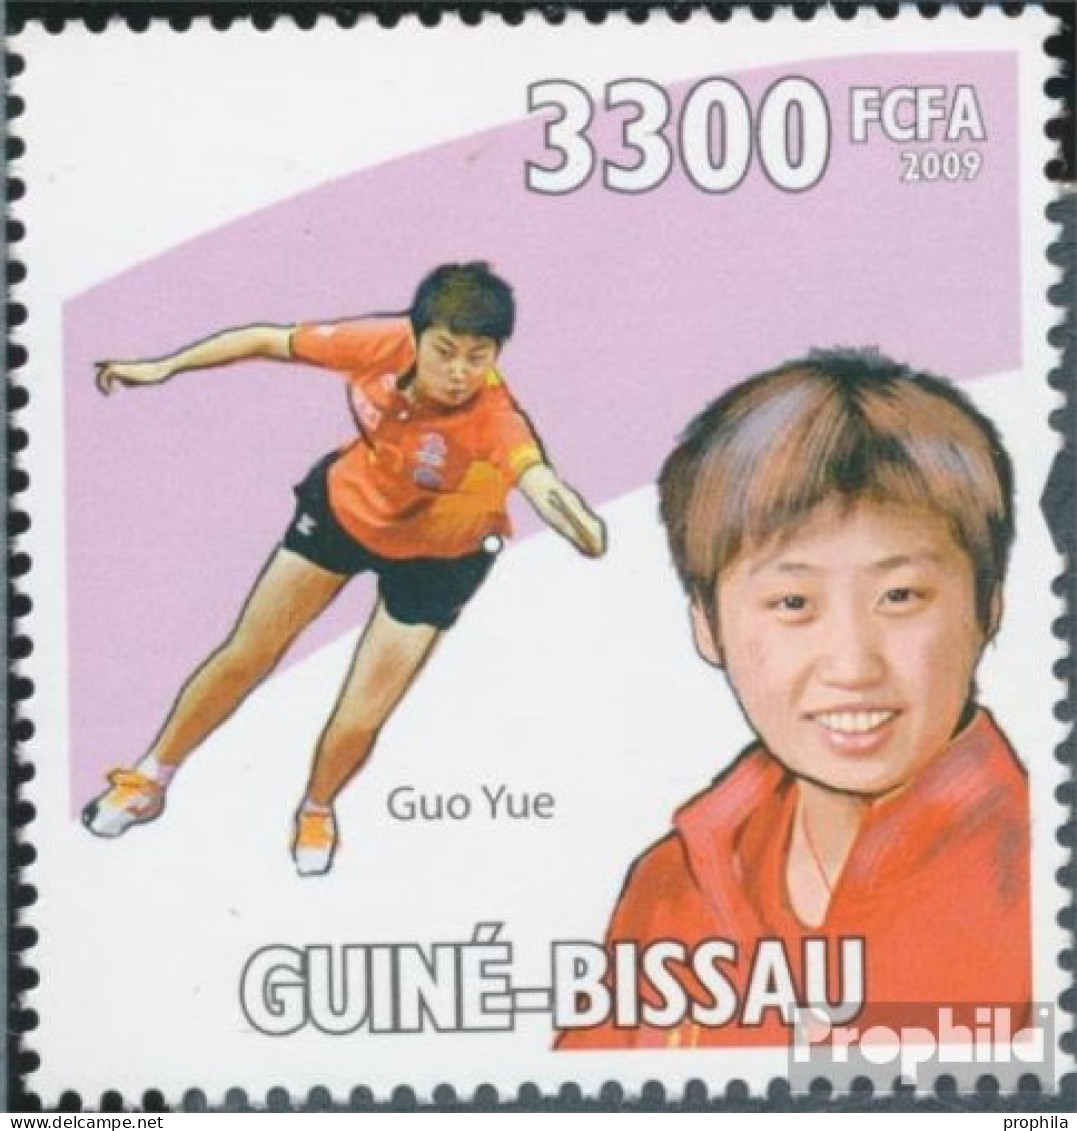 Guinea-Bissau 4479 (kompl. Ausgabe) Postfrisch 2009 Tischtennismeister - Guinea-Bissau